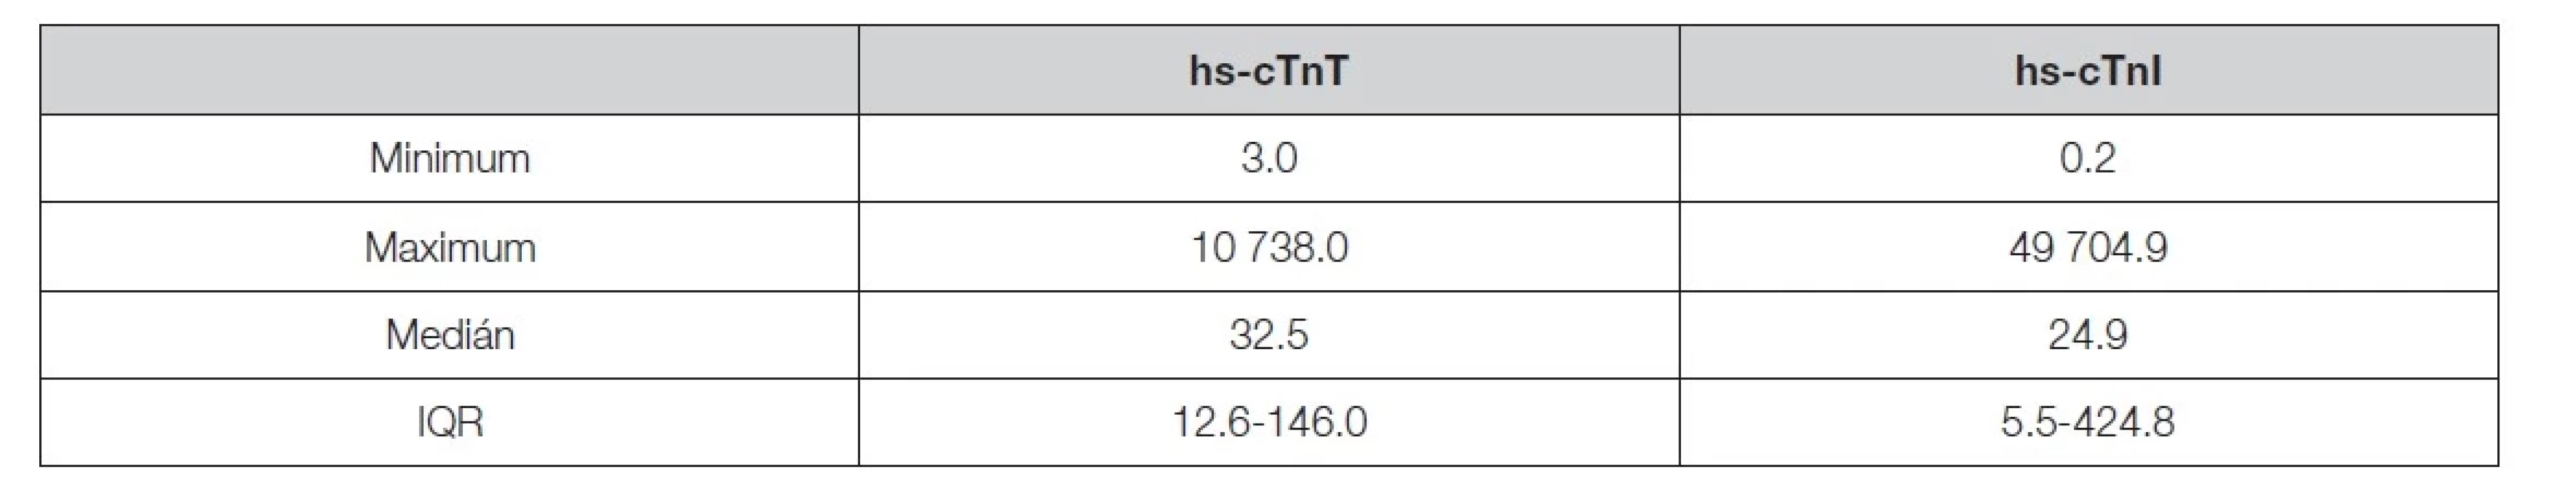 Descriptive statistics of 821 pairs of hs-cTnT and hs-cTnI measurements